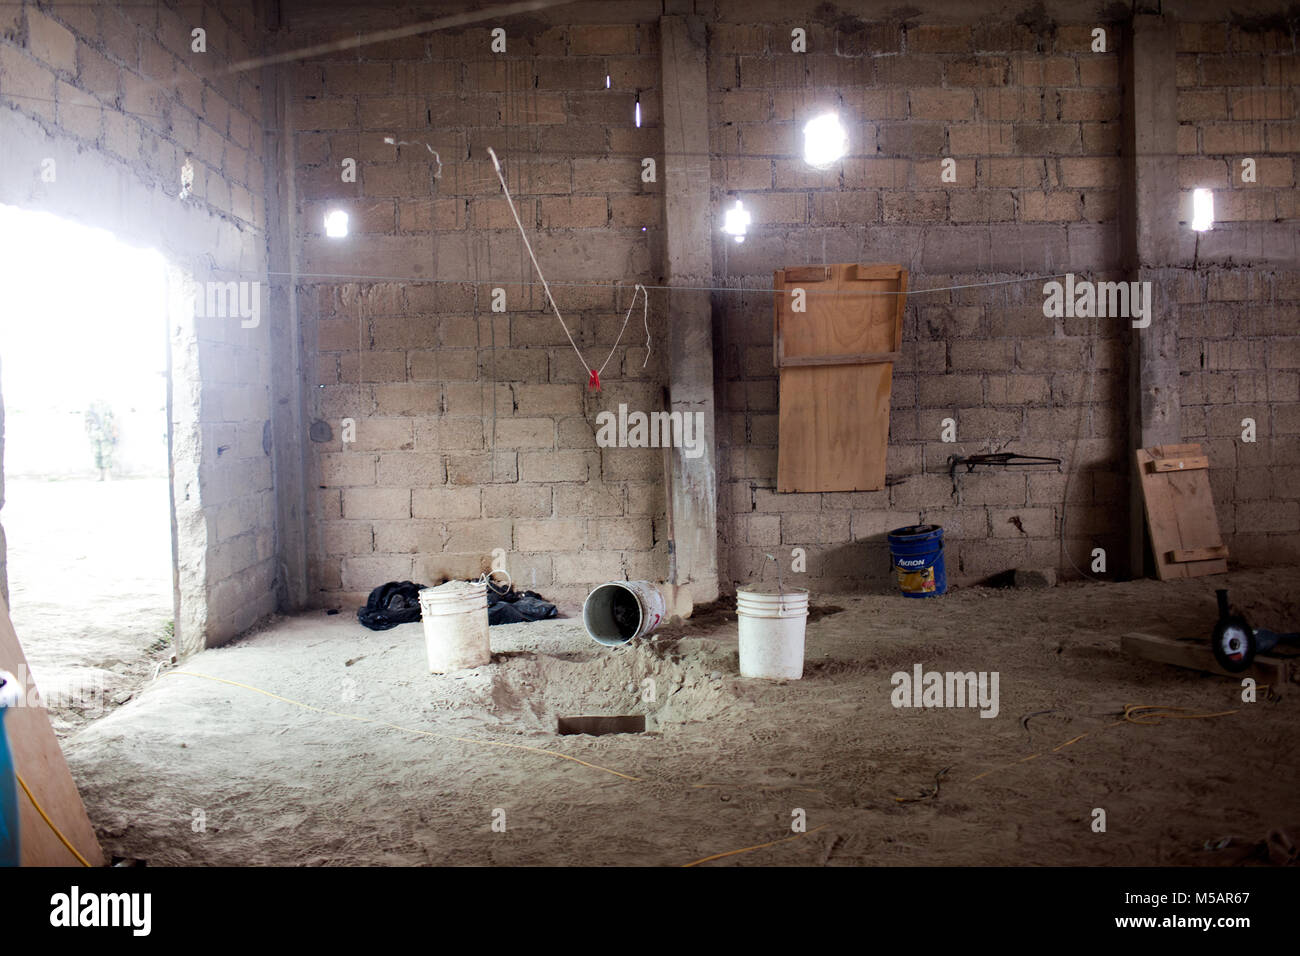 Un petit tunnel dans le plancher d'une maison de ferme qui a été utilisé par Joaquin "El Chapo" Guzman pour échapper à la prison de l'Altiplano près de Toluca, Mexique le dimanche 12 juillet 2015. Le célèbre chef du cartel Joaquin "El Chapo" Guzman s'est échappé de cette prison de haute sécurité la nuit d'avant à travers un tunnel. C'est la deuxième fois qu'il a échappé à une prison mexicaine. Banque D'Images